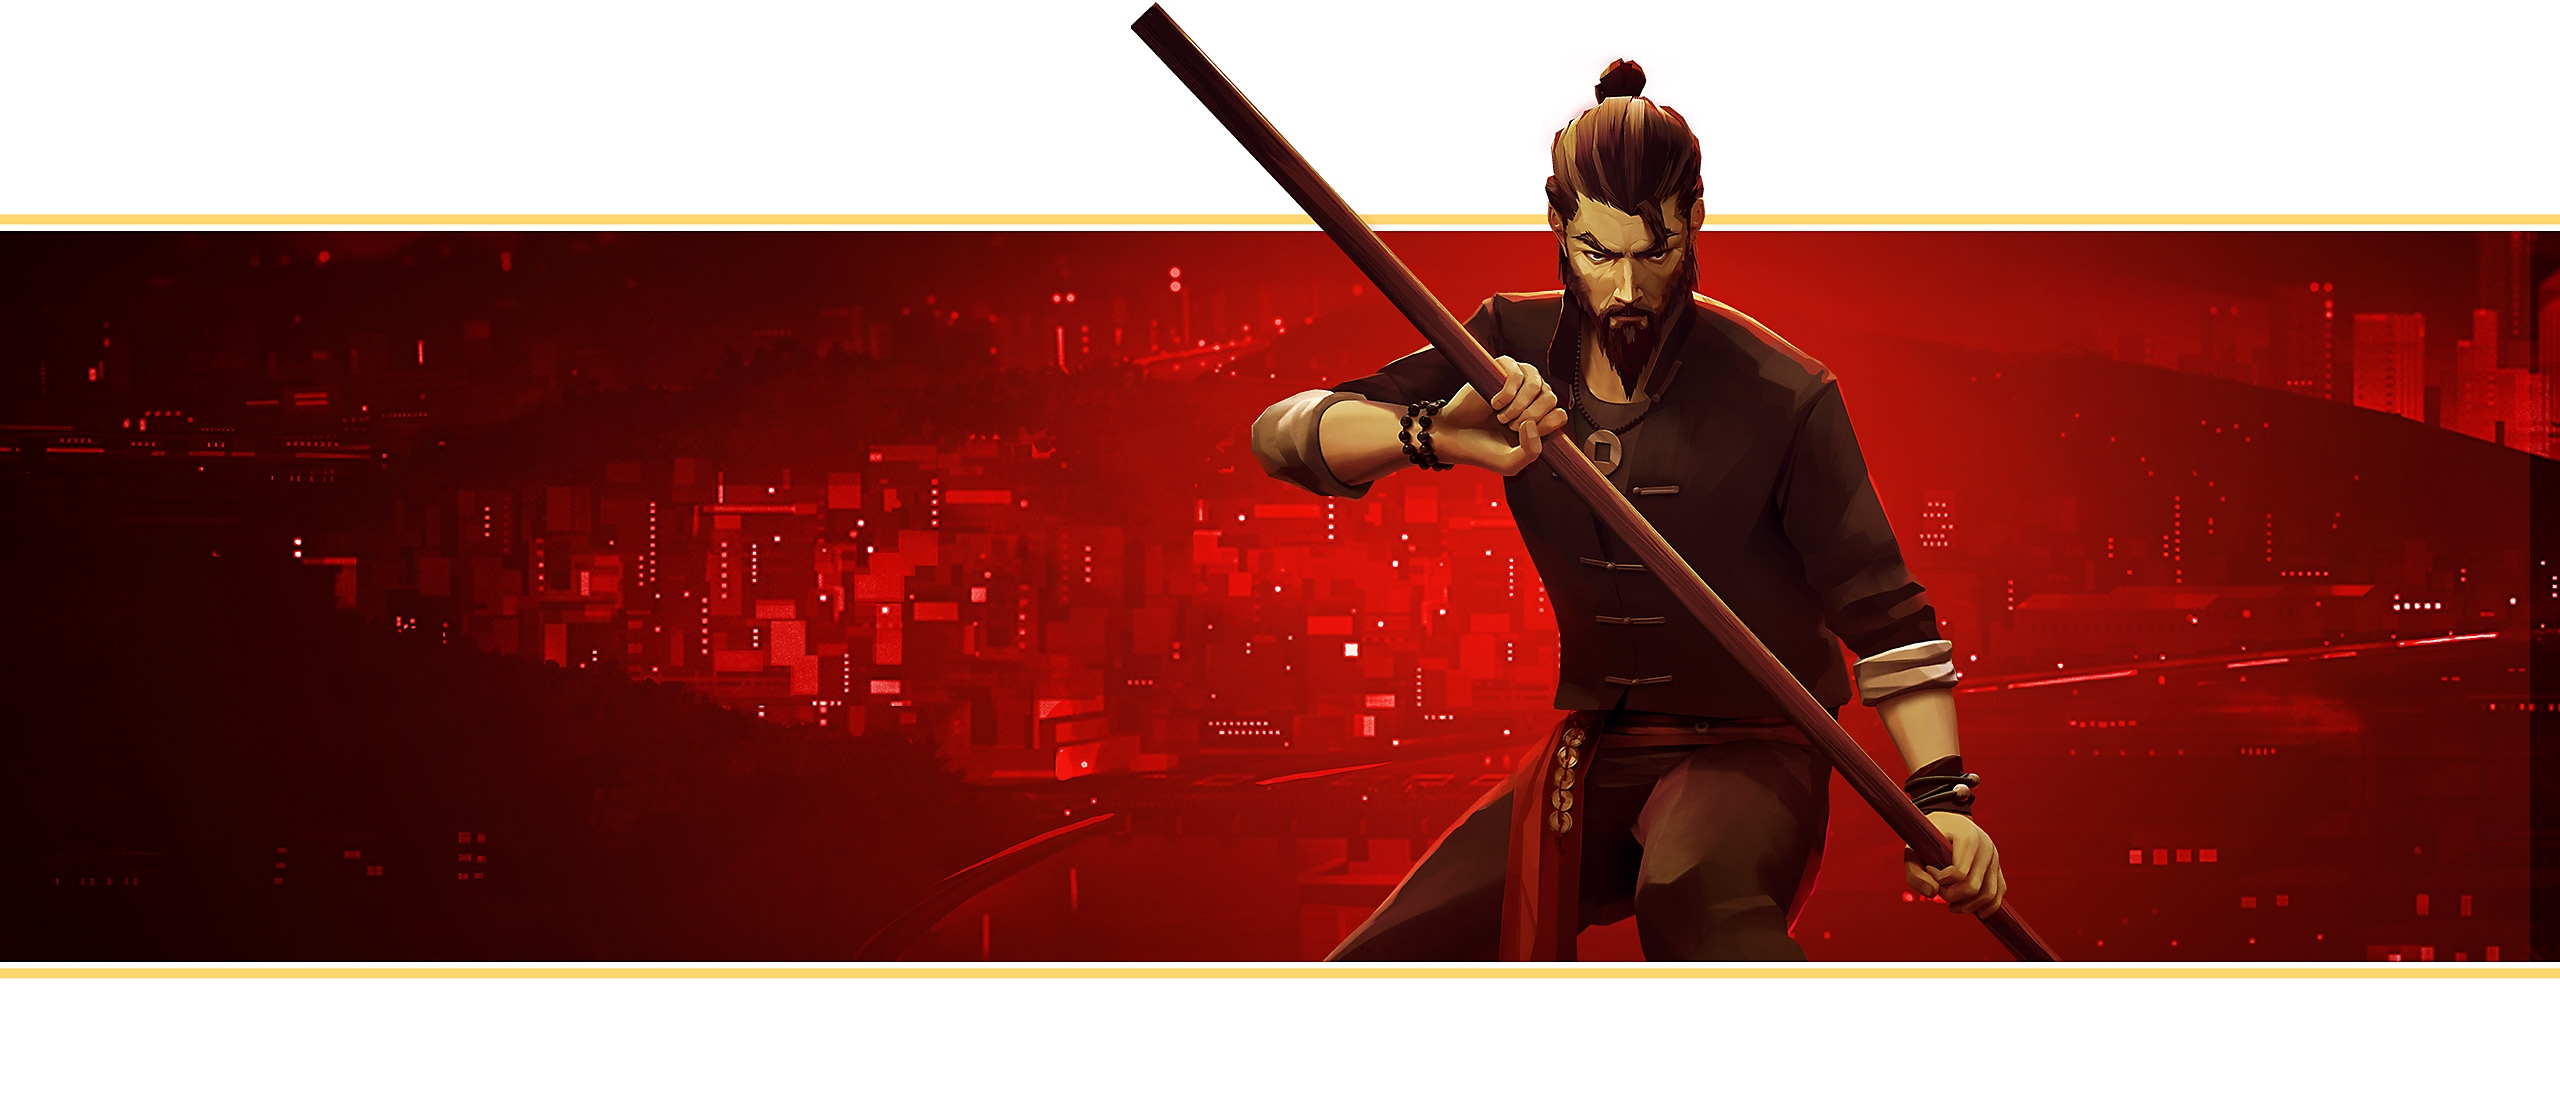 《Sifu》的横幅展示了游戏主题宣传海报：主角微微颔首，两手拿着长棍。